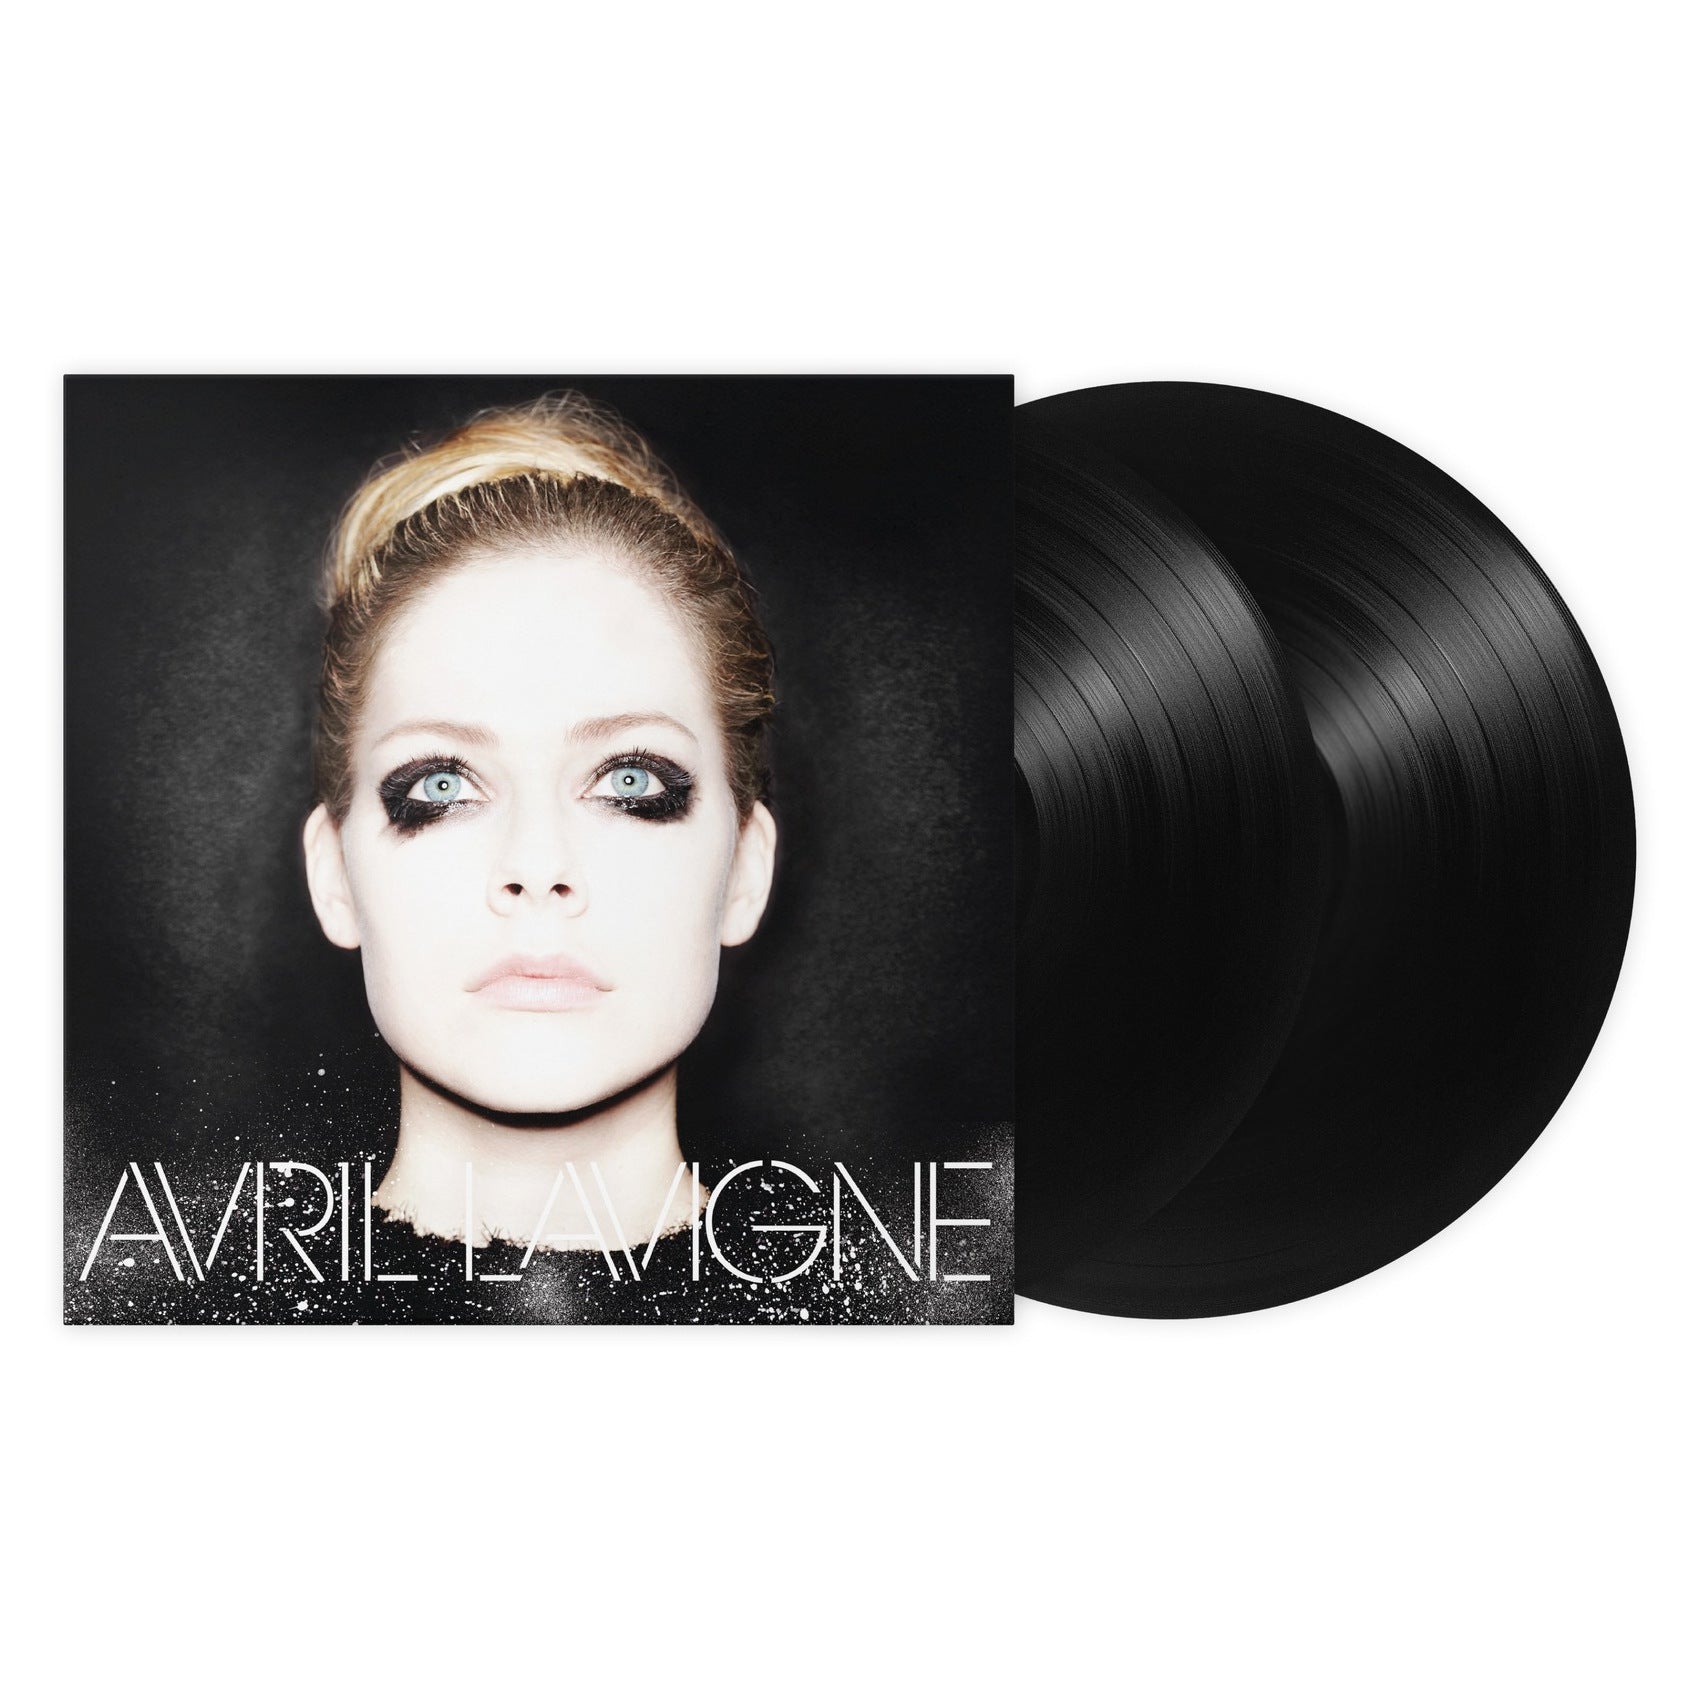 AVRIL LAVIGNE - Avril Lavigne - 2LP - Black Vinyl [JUN 21]